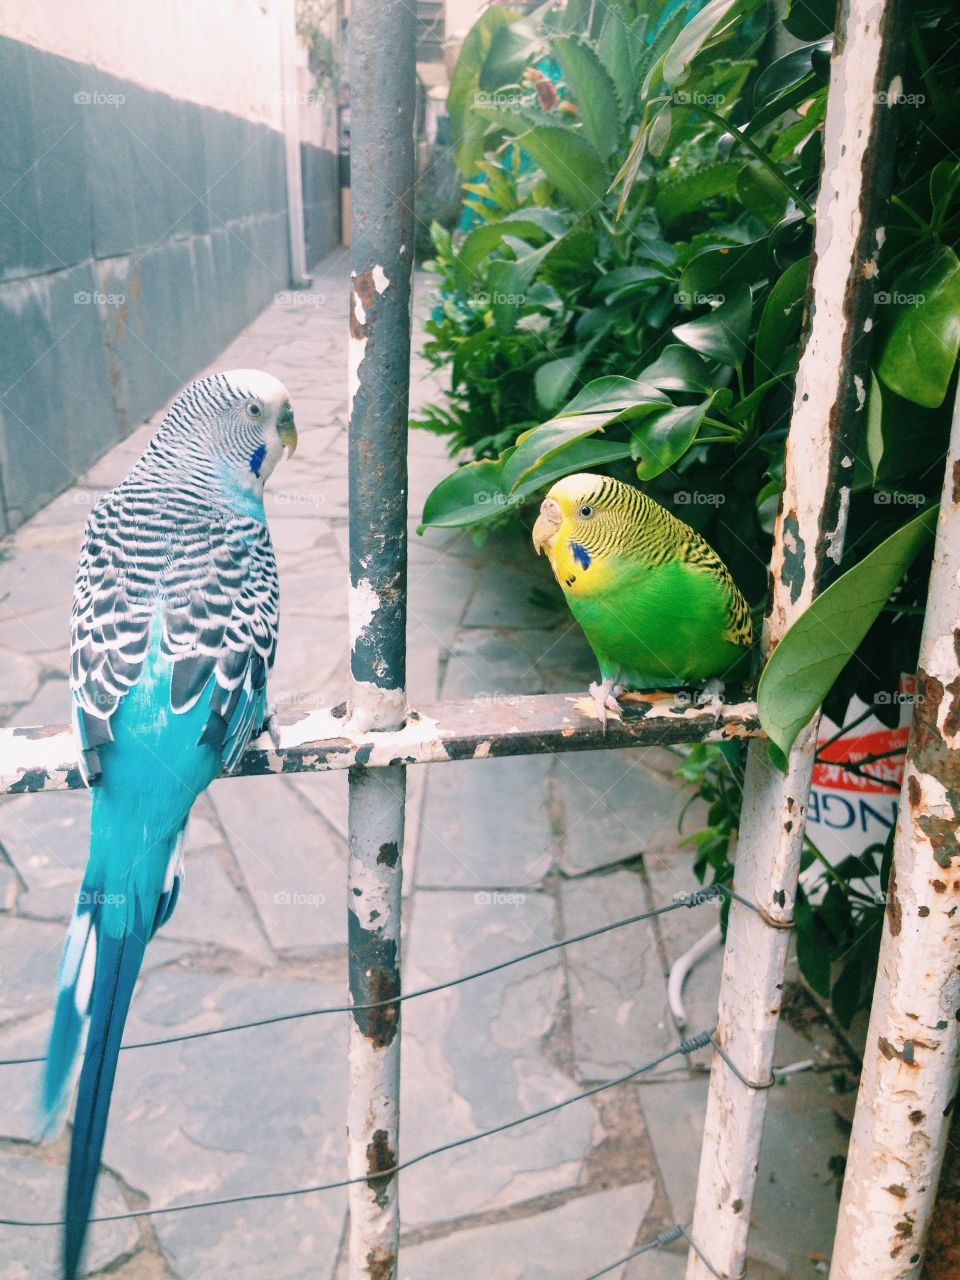 Amo esses pássaros 